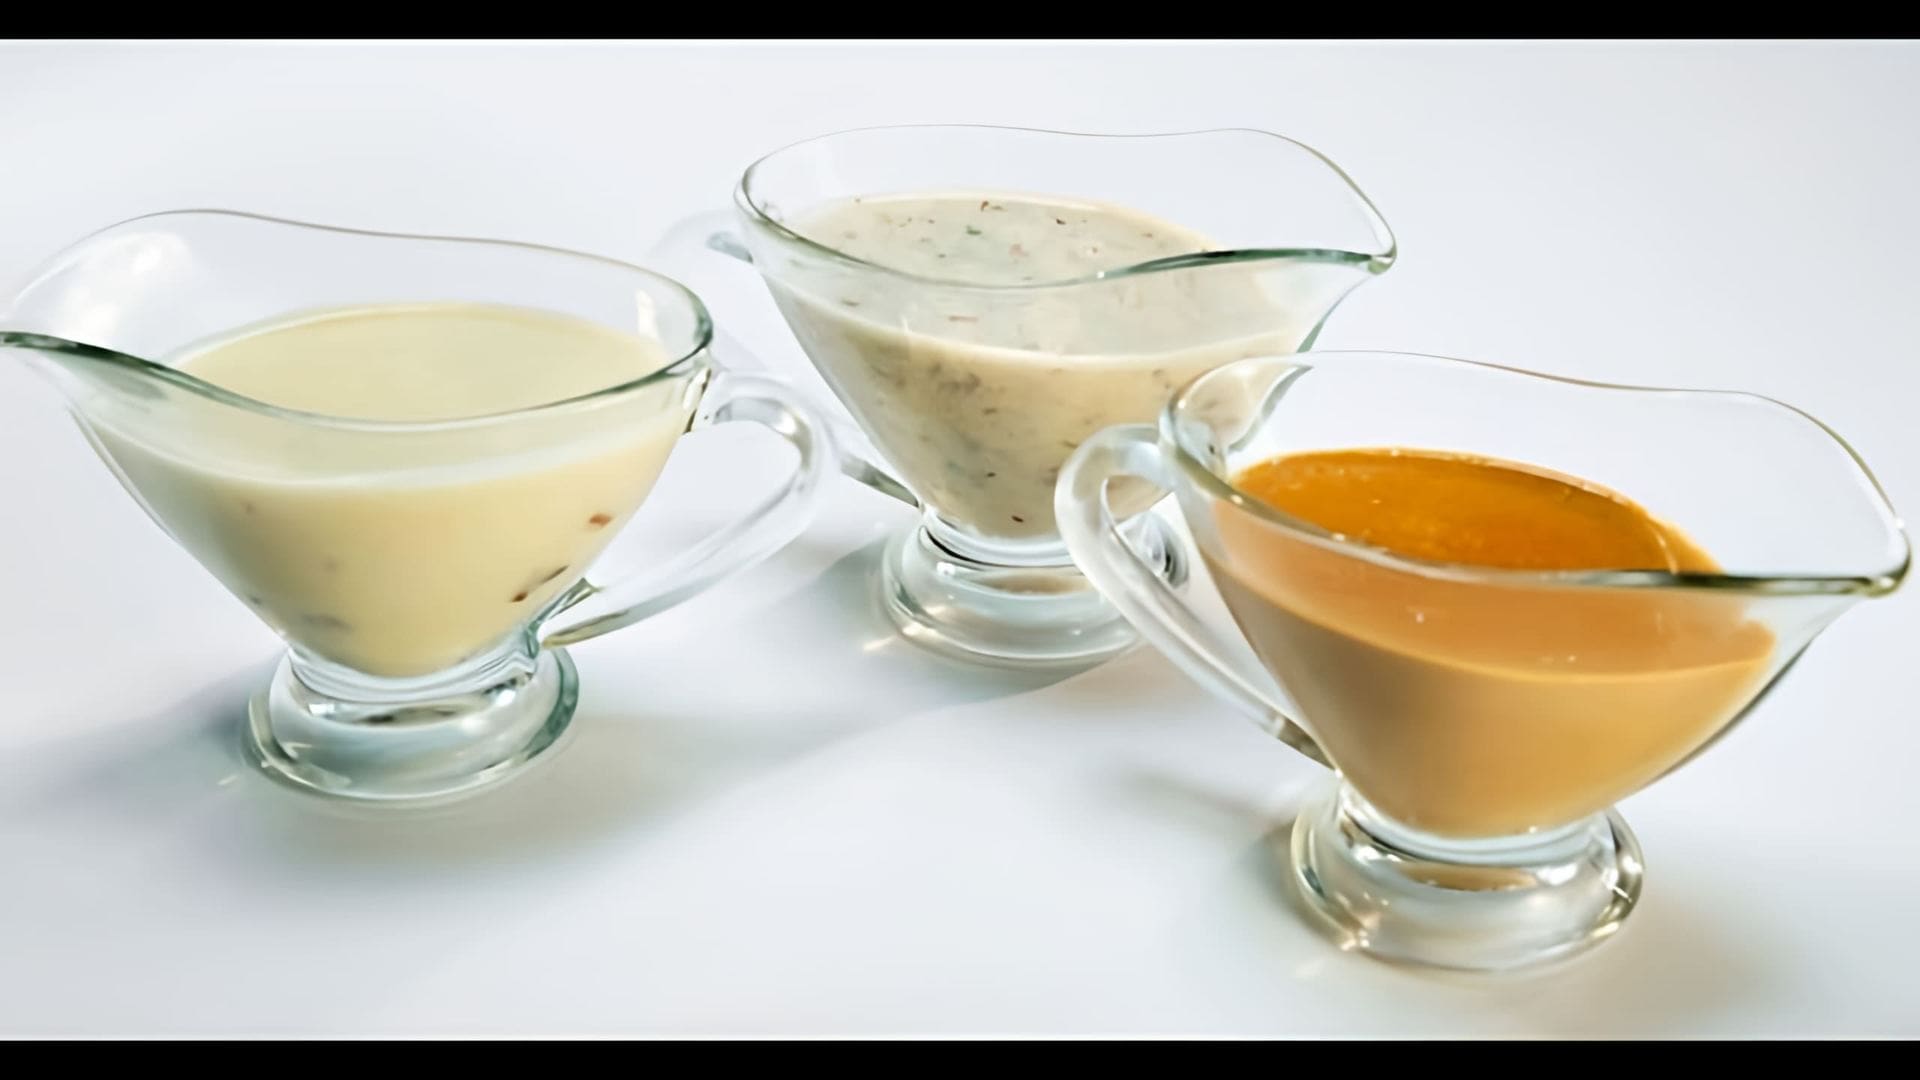 В этом видео демонстрируется приготовление трех видов ореховых соусов: арахисового, миндального и фундучного